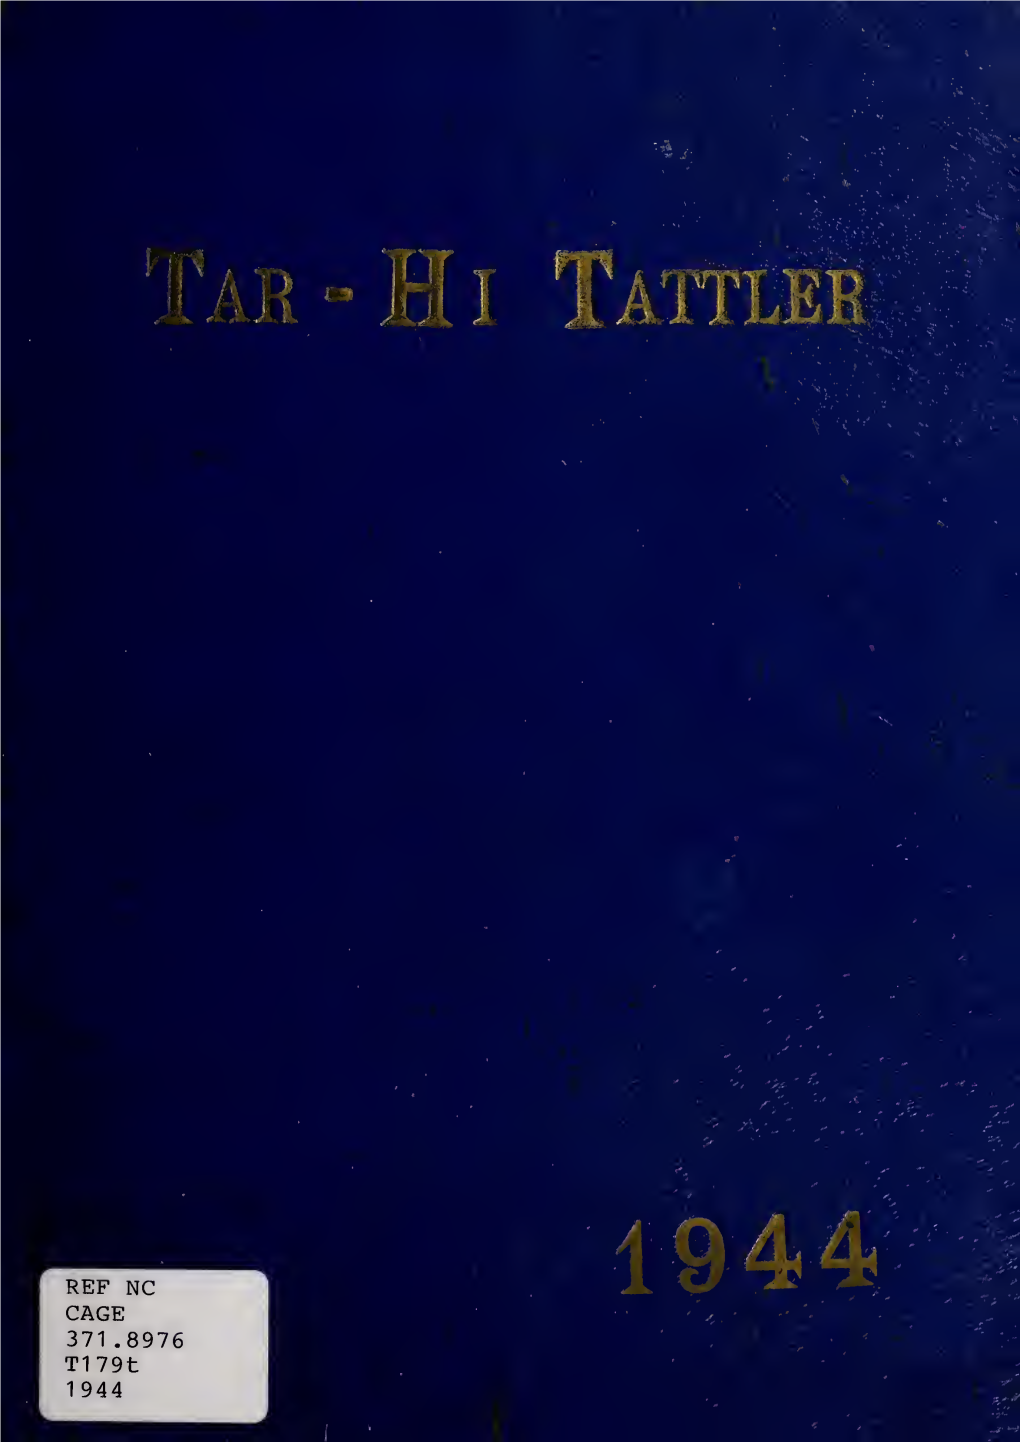 Tarboro High School Yearbook, Tar-Hi Tattler, 1944